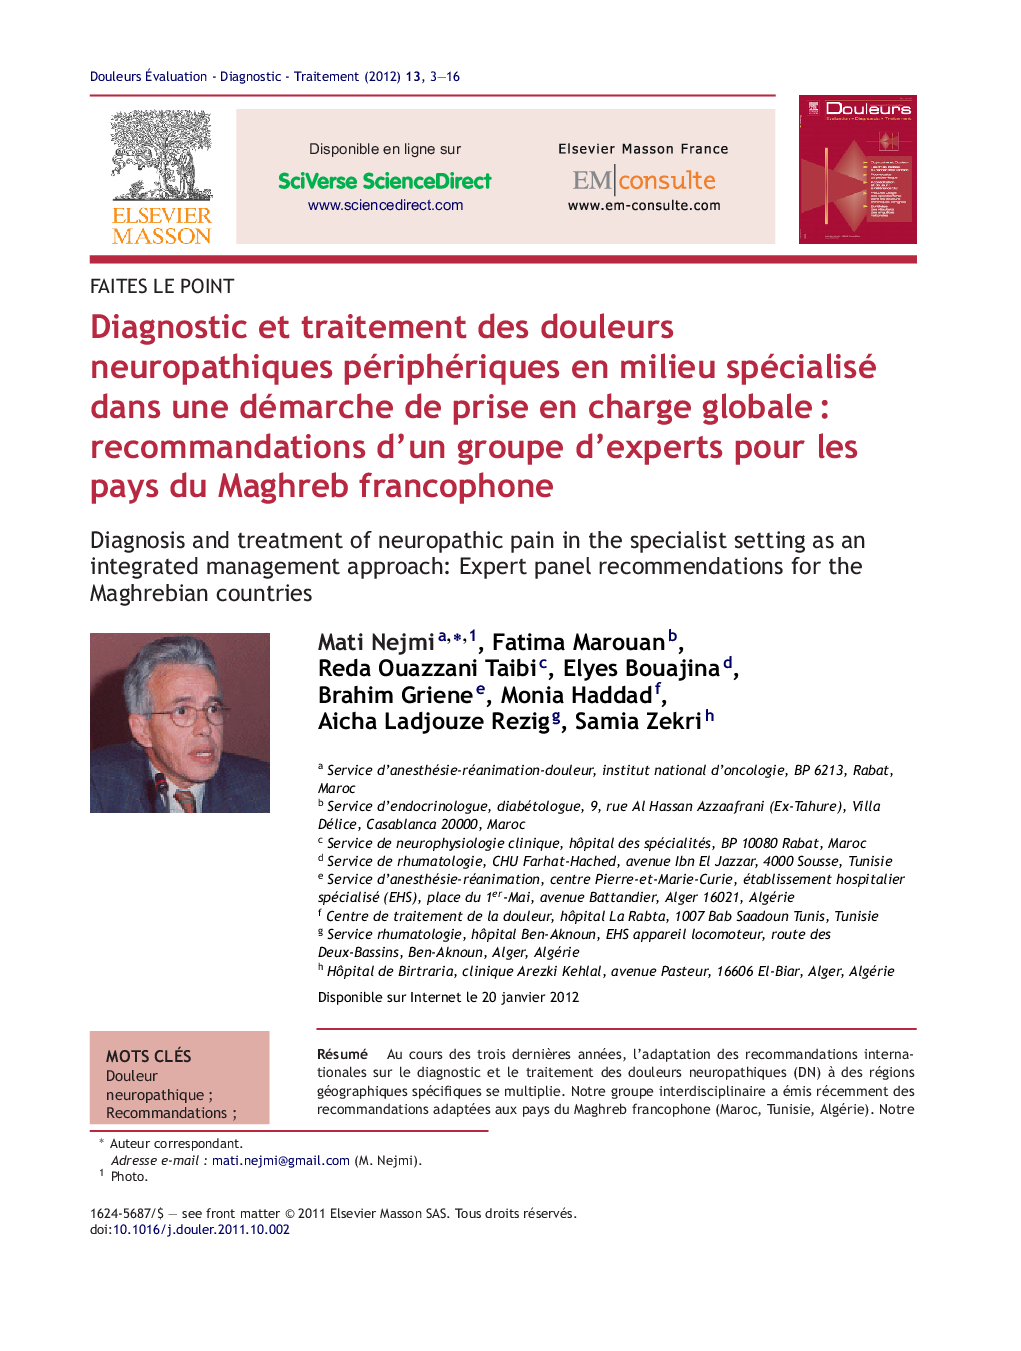 Diagnostic et traitement des douleurs neuropathiques périphériques en milieu spécialisé dans une démarche de prise en charge globaleÂ : recommandations d'un groupe d'experts pour les pays du Maghreb francophone